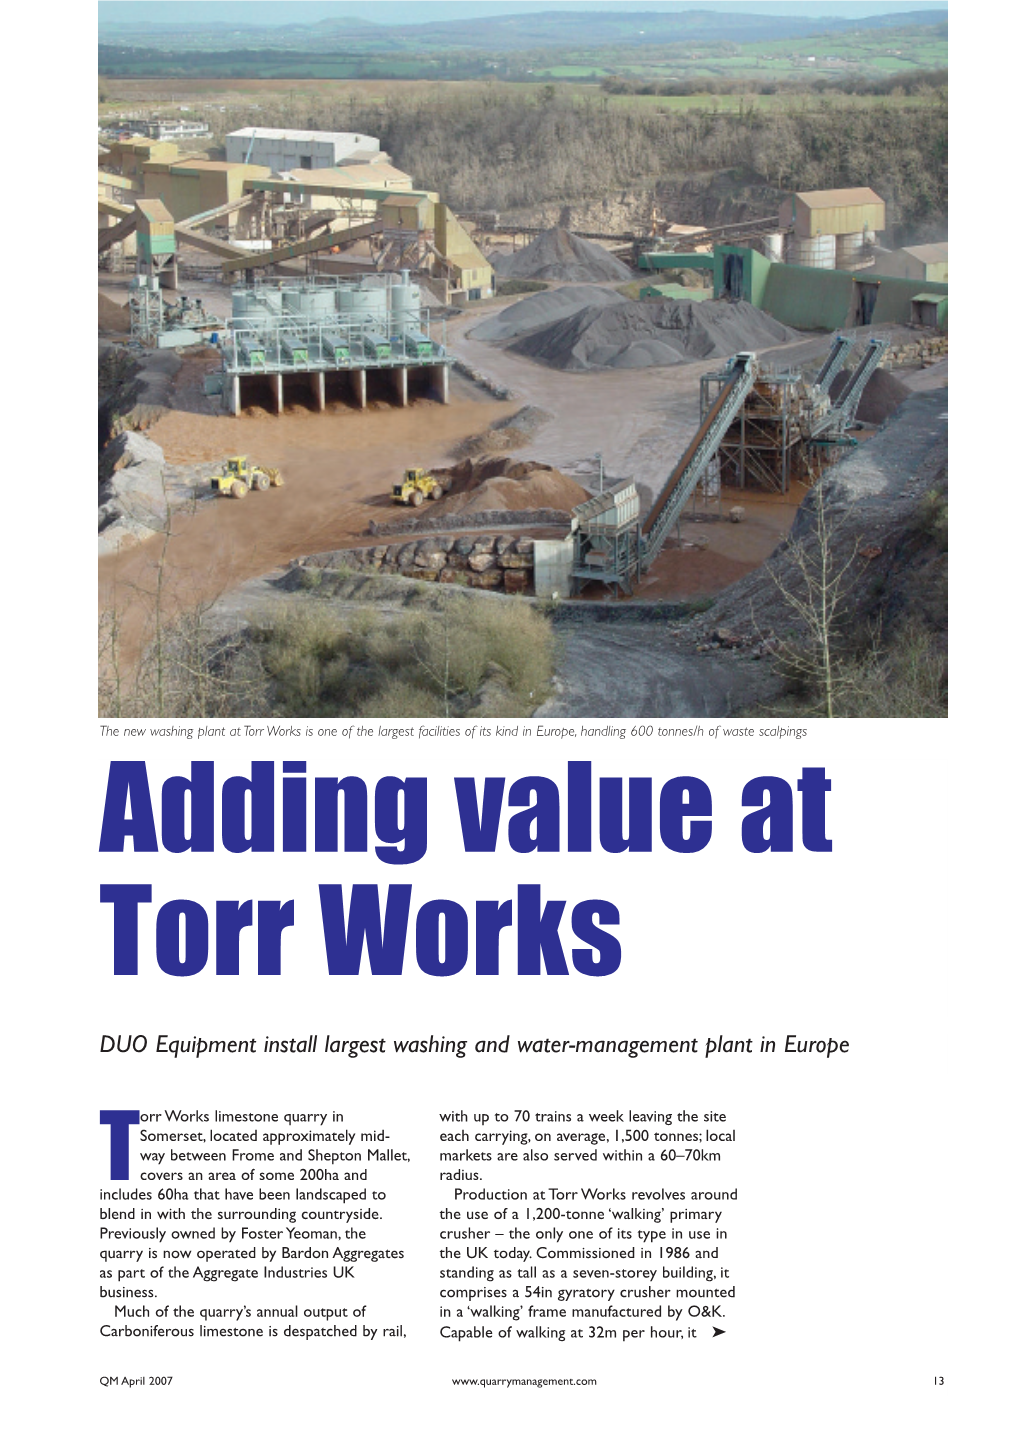 Adding Value at Torr Works